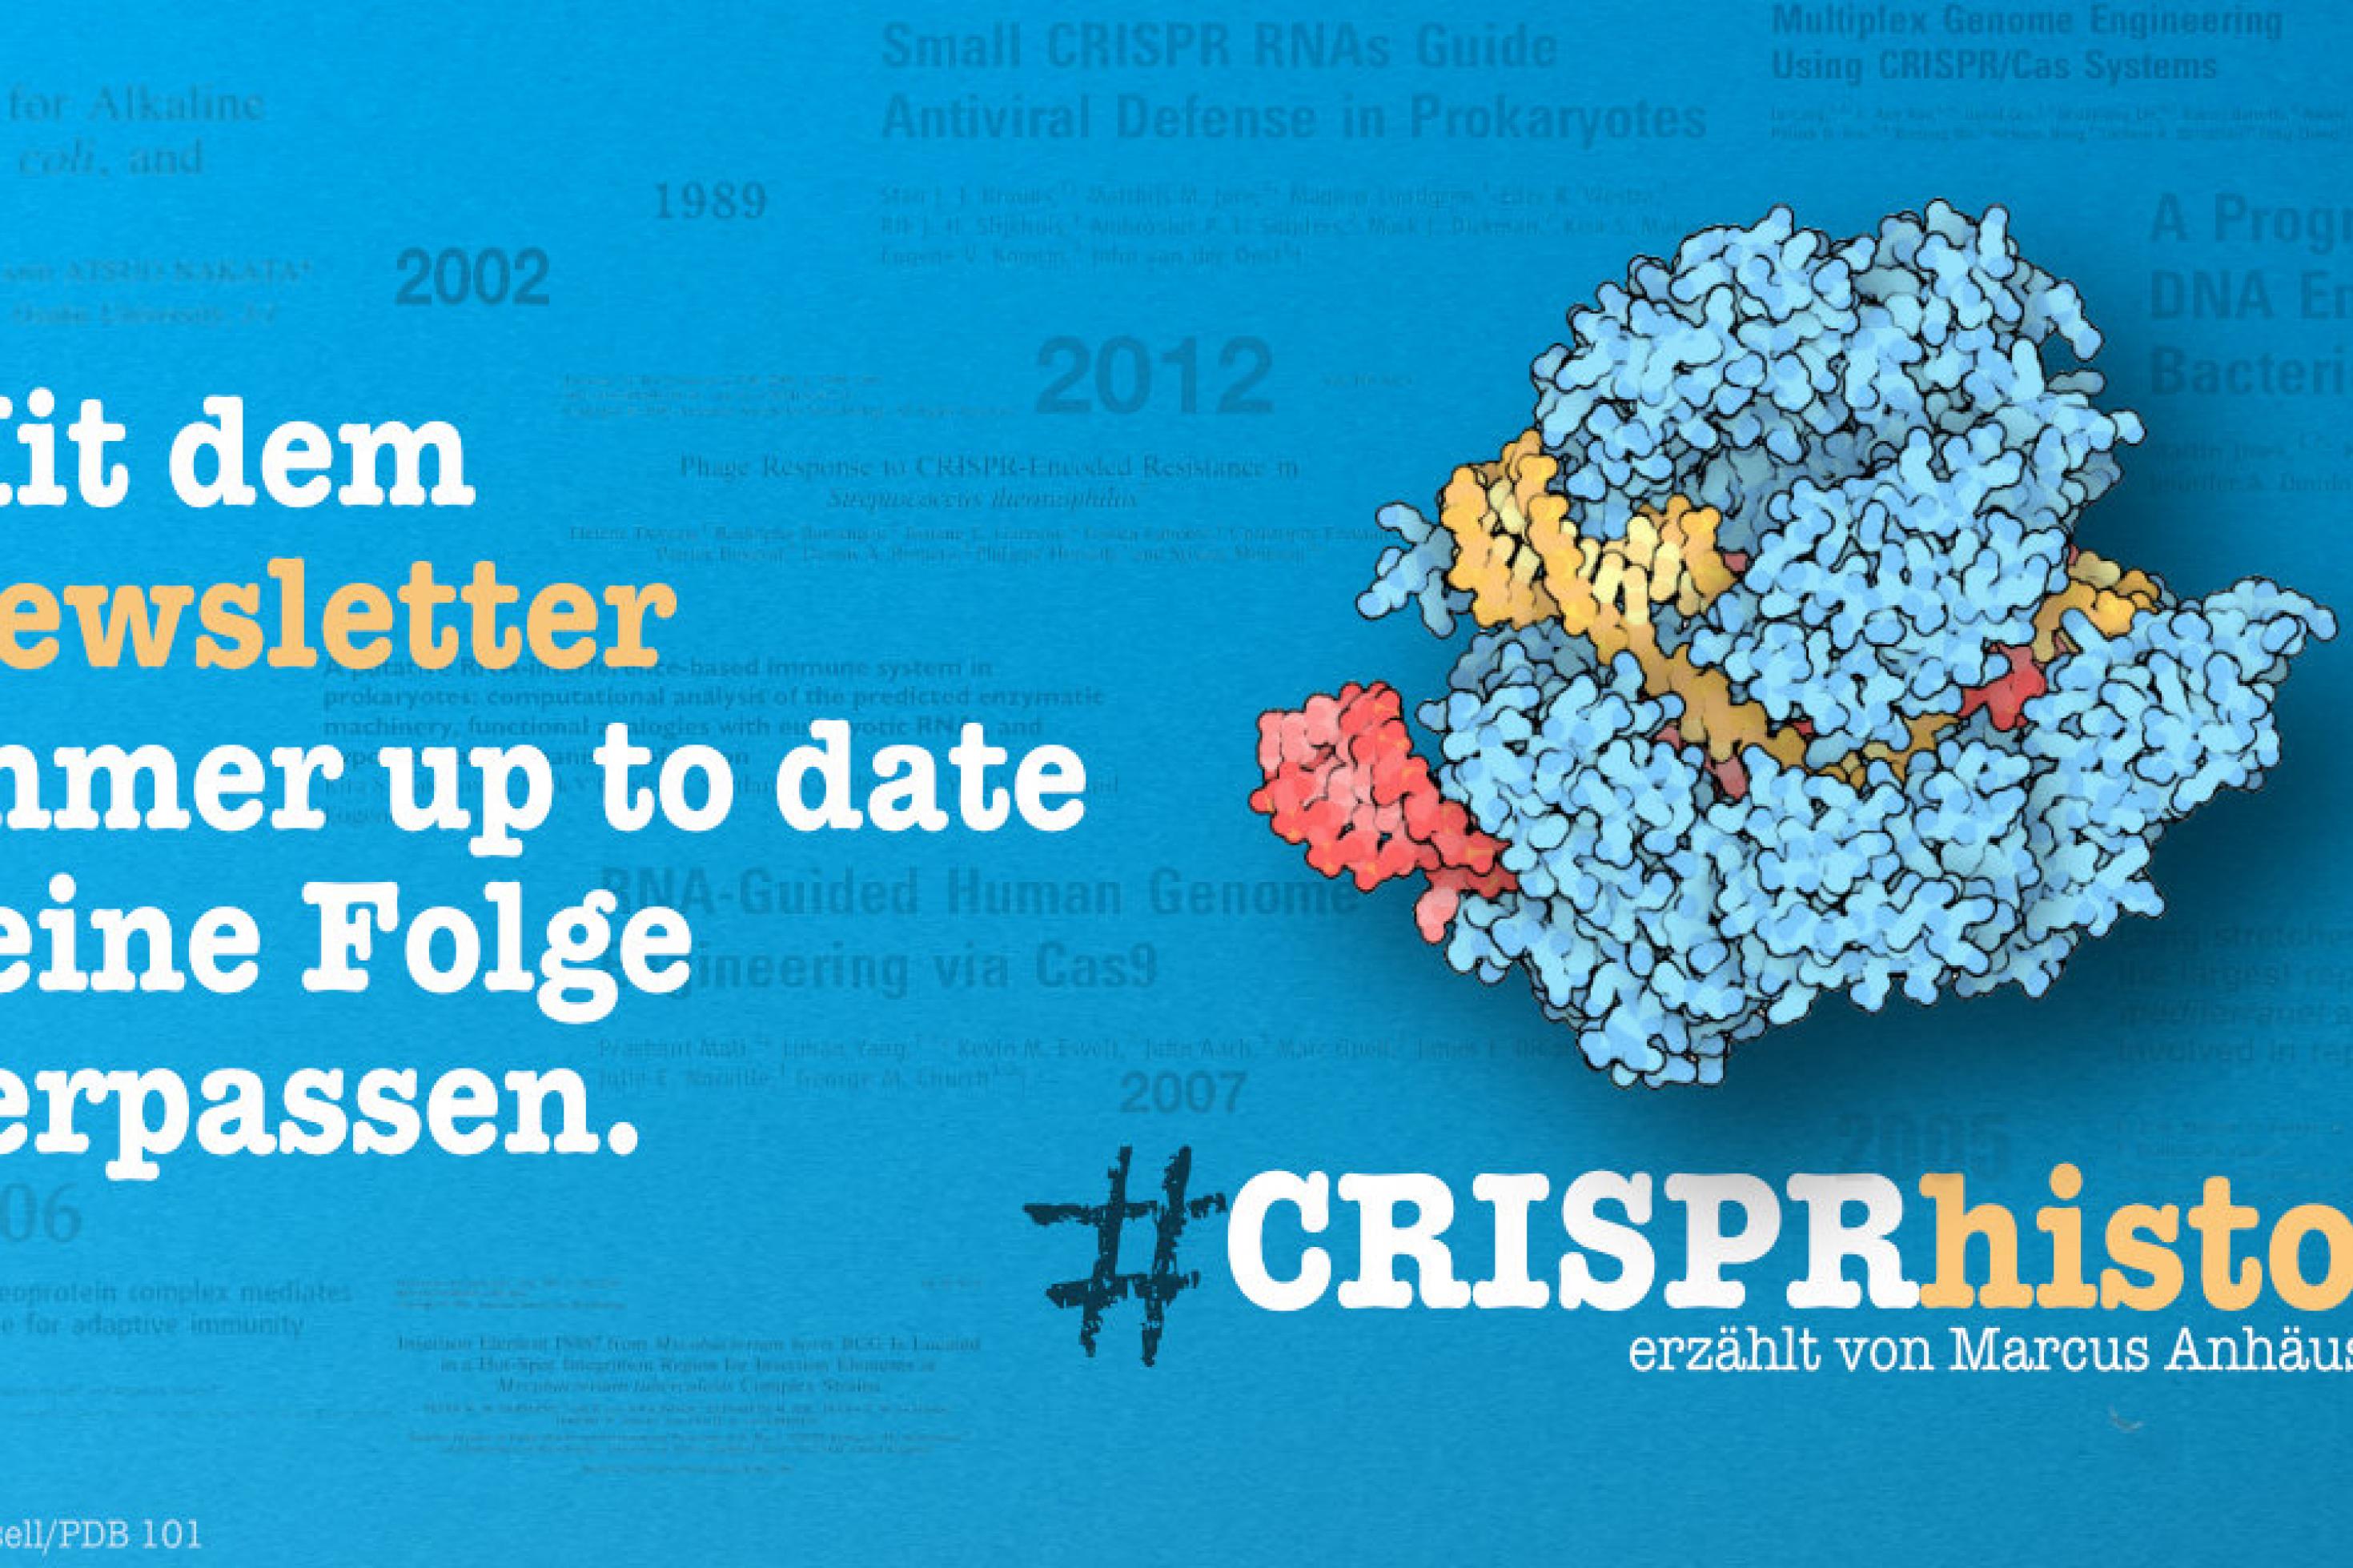 Rechts eine Grafik des Cas9-Moleküls schwebend vor blauem Hintergrund mit wichtigen Titeln und Jahreszahlen der CRISPR-Historie, links die Schrift: Mit dem Newsletter immer up to date keine Folge verpassen.